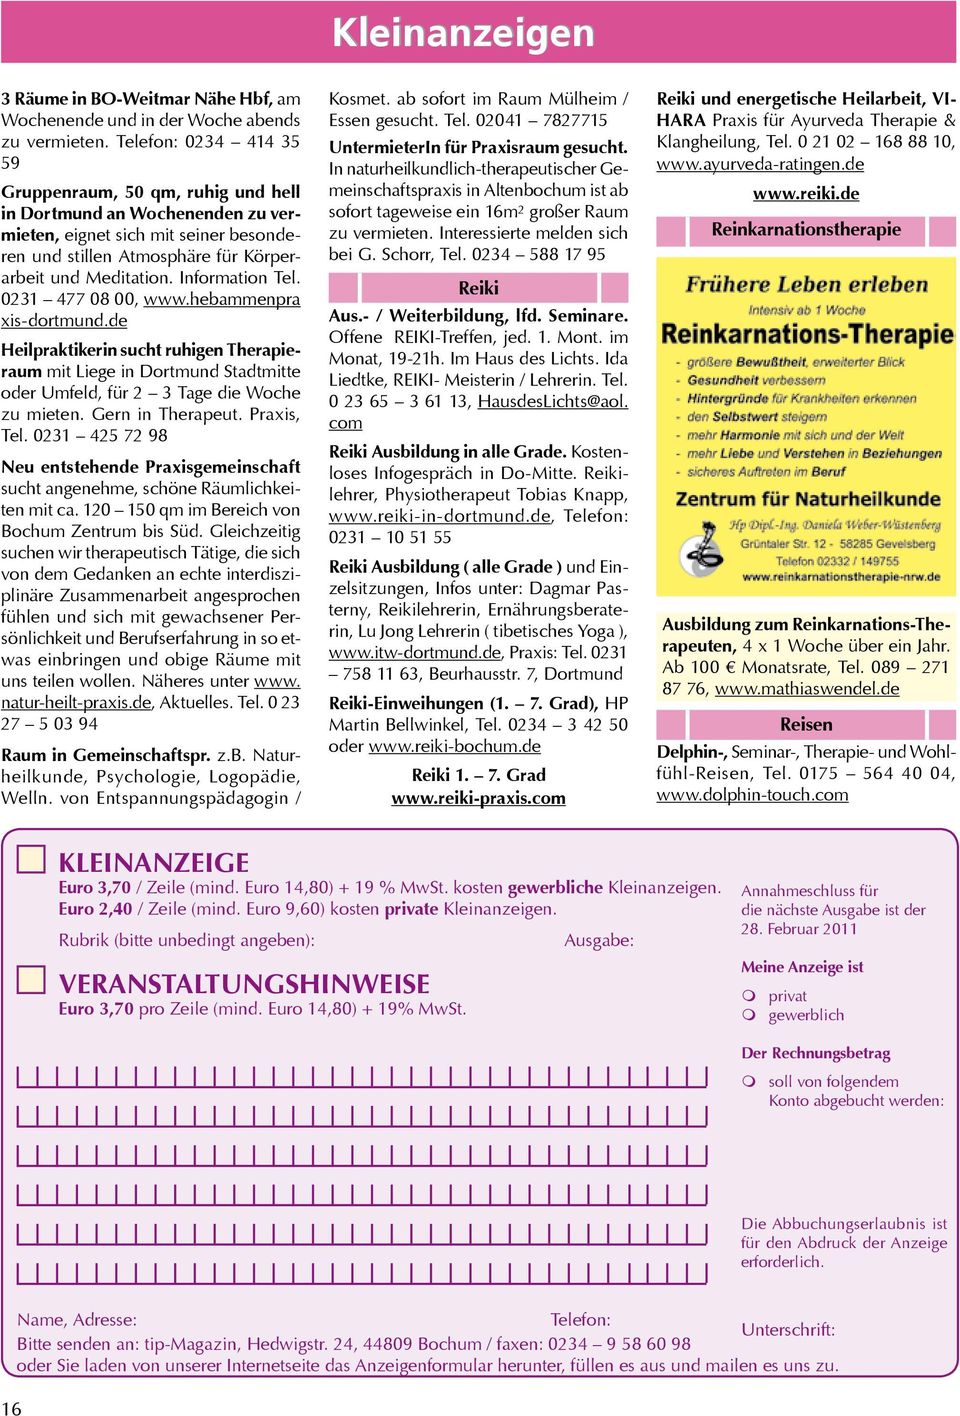 Information Tel. 0231 477 08 00, www.hebammenpra xis-dortmund.de Heilpraktikerin sucht ruhigen Therapieraum mit Liege in Dortmund Stadtmitte oder Umfeld, für 2 3 Tage die Woche zu mieten.